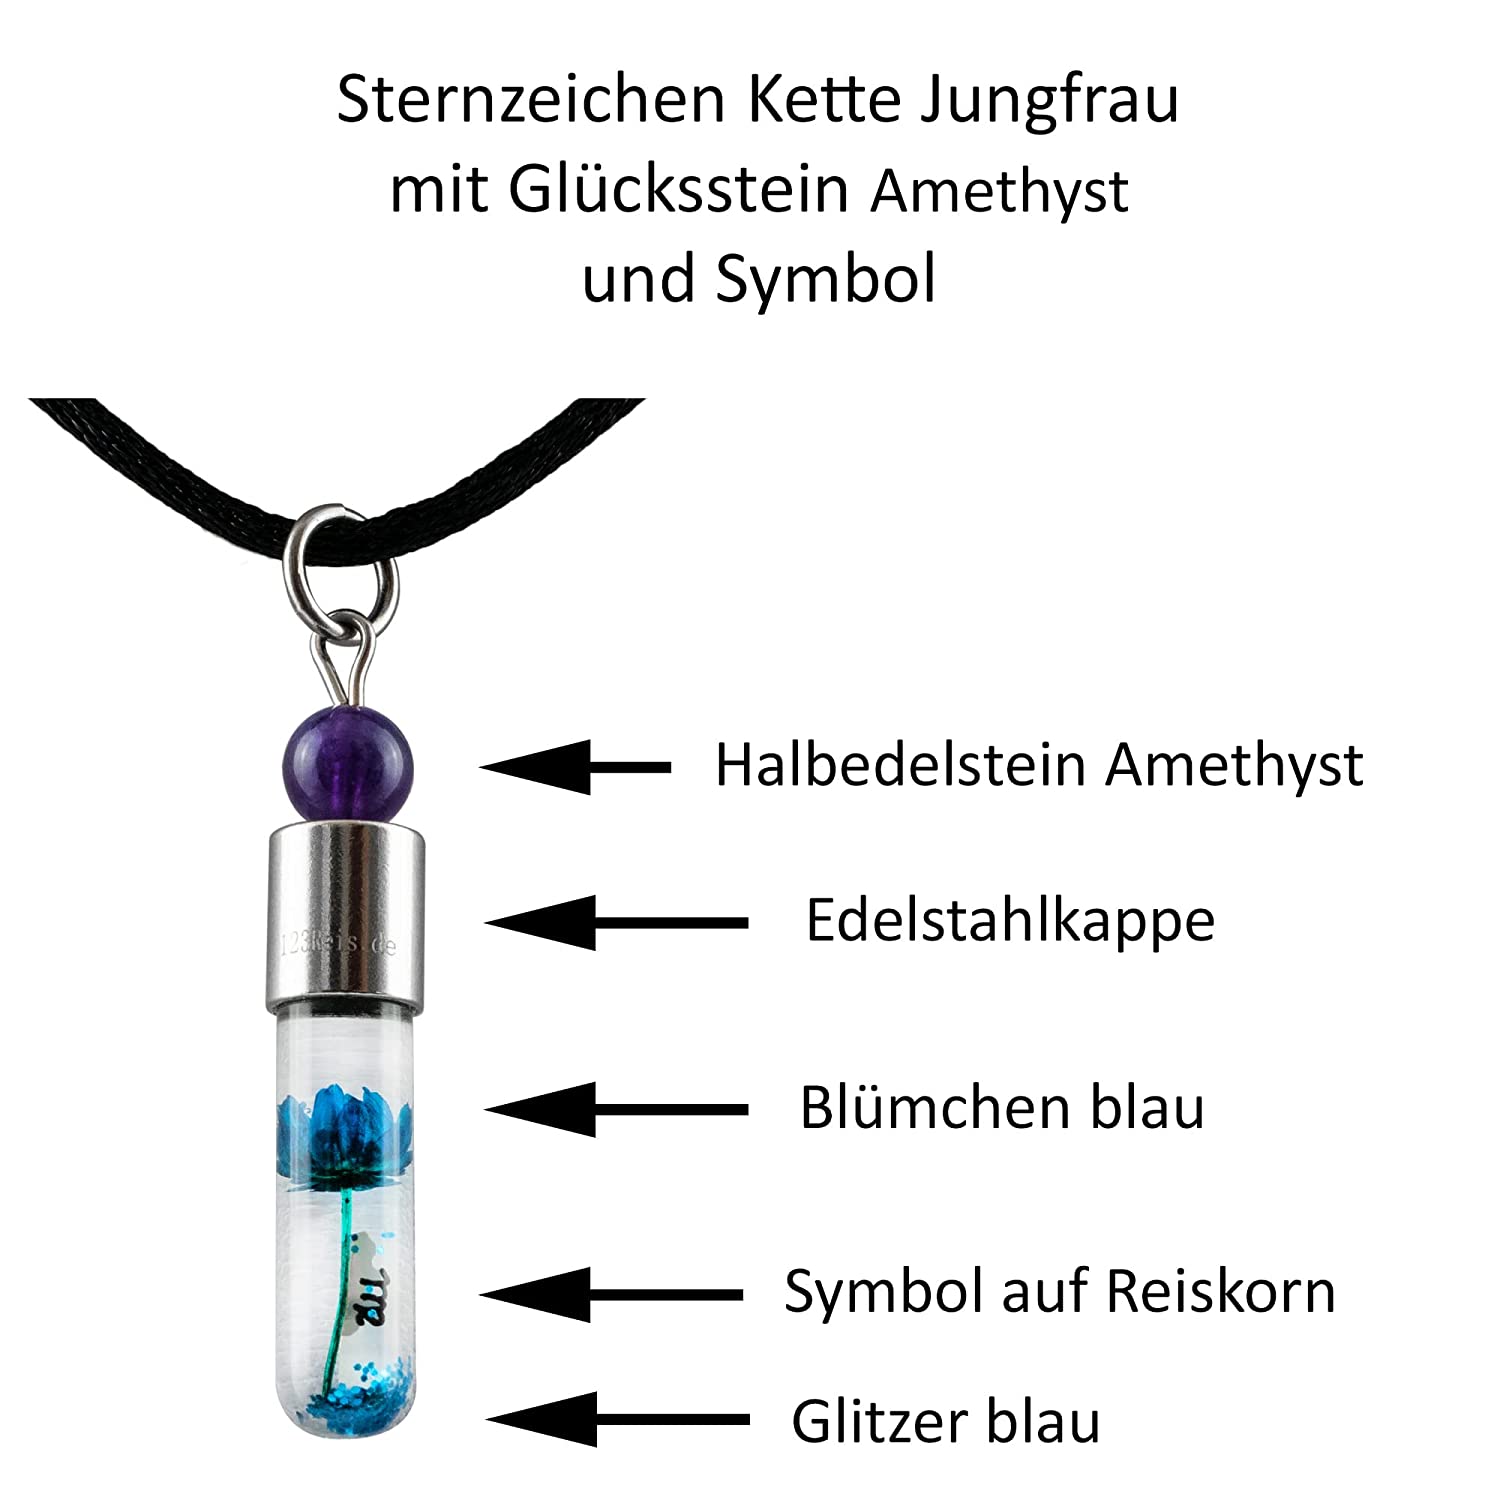 Sternzeichen Jungfrau, 24. August - 23. September, Halskette mit Glückstein Amethyst und Sternzeichensymbol - 0